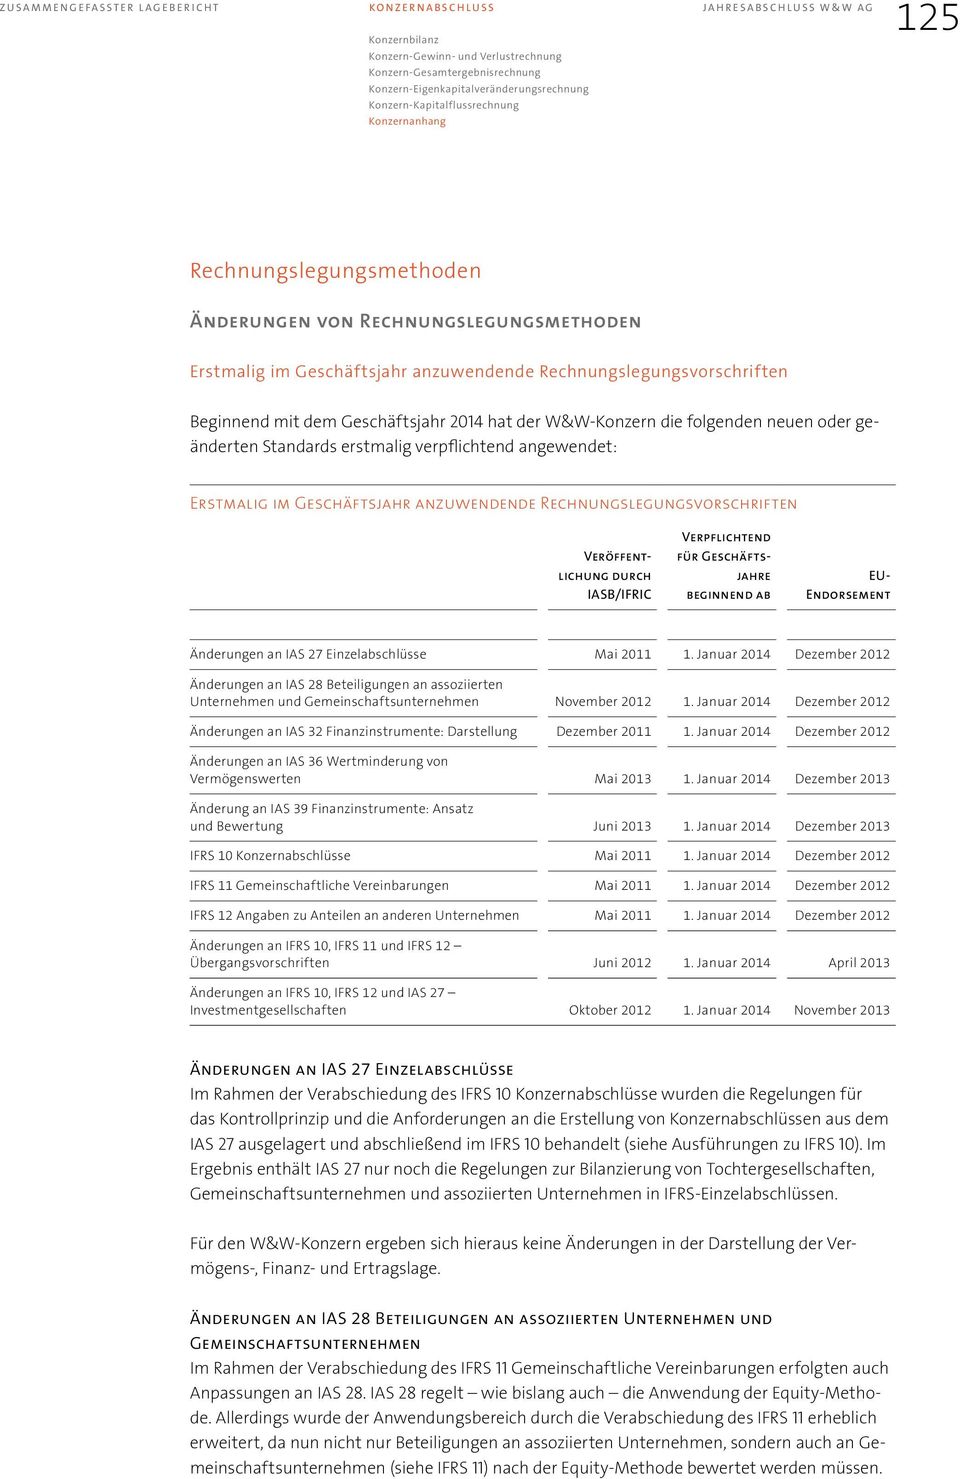 anzuwendende Rechnungslegungsvorschriften Veröffentlichung durch IASB/IFRIC Verpflichtend für Geschäftsjahre beginnend ab EU- Endorsement Änderungen an IAS 27 Einzelabschlüsse Mai 2011 1.